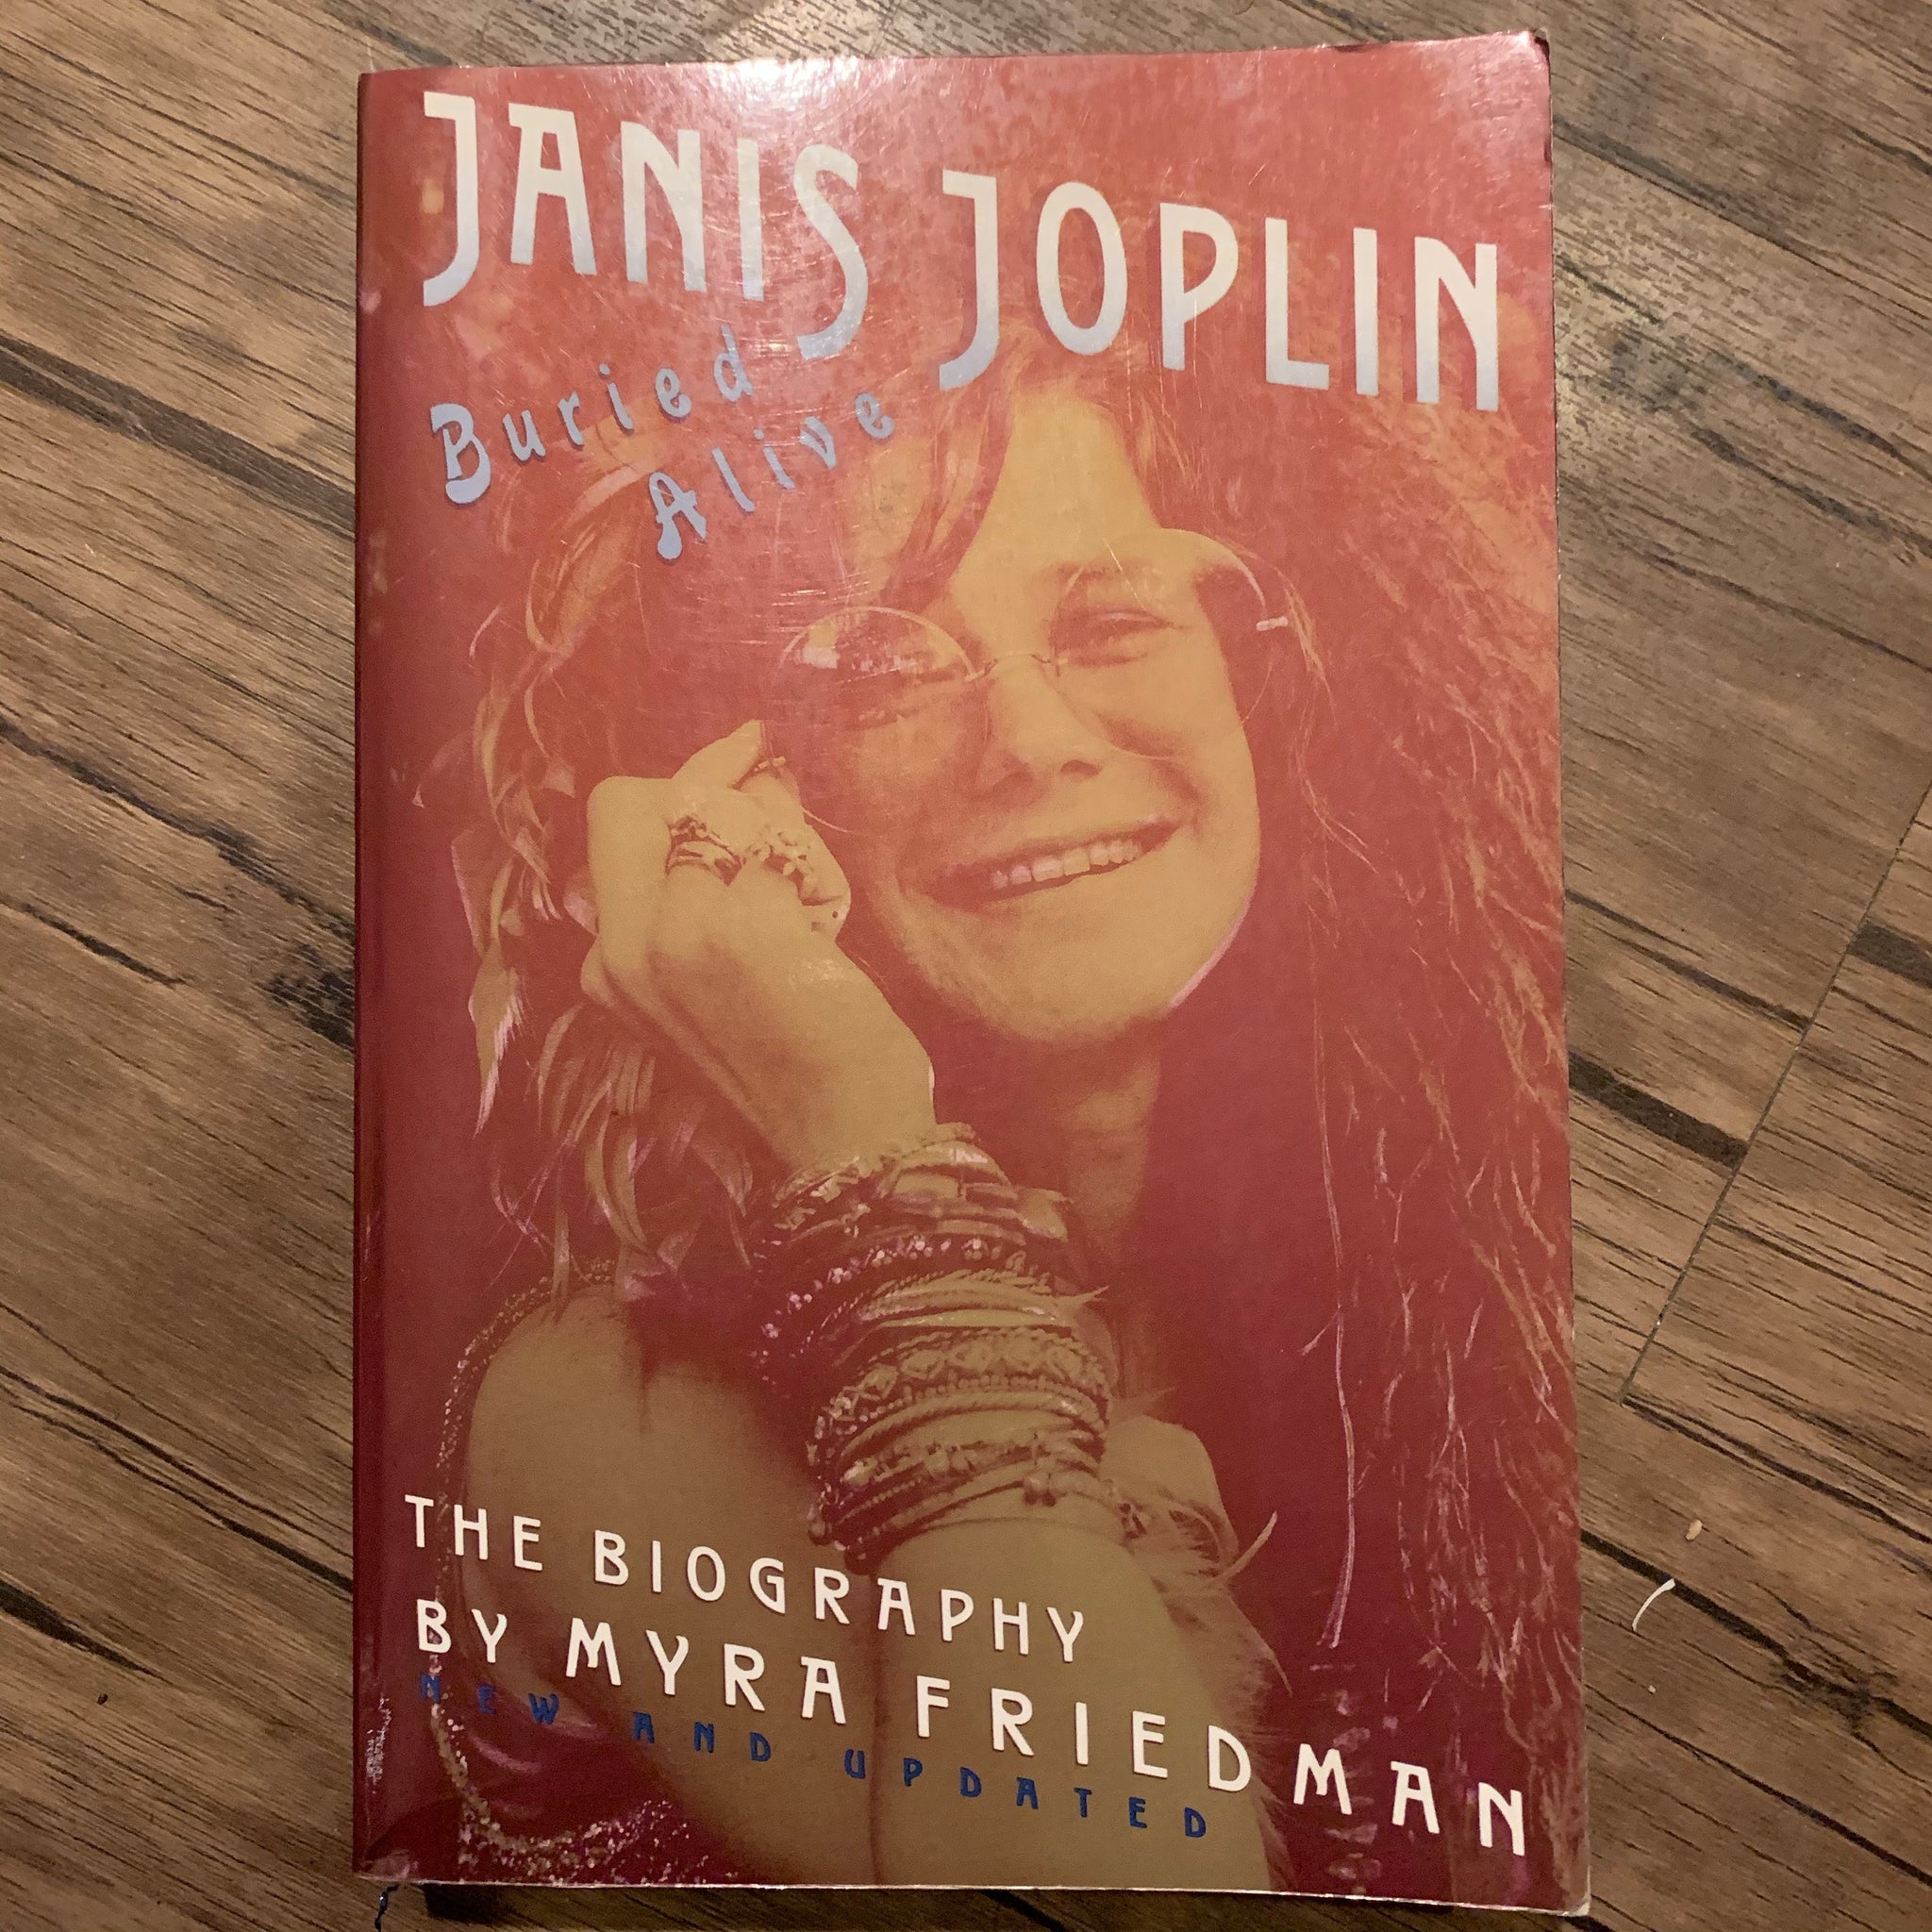 Janis Joplin: Buried Alive by Myra Friedman